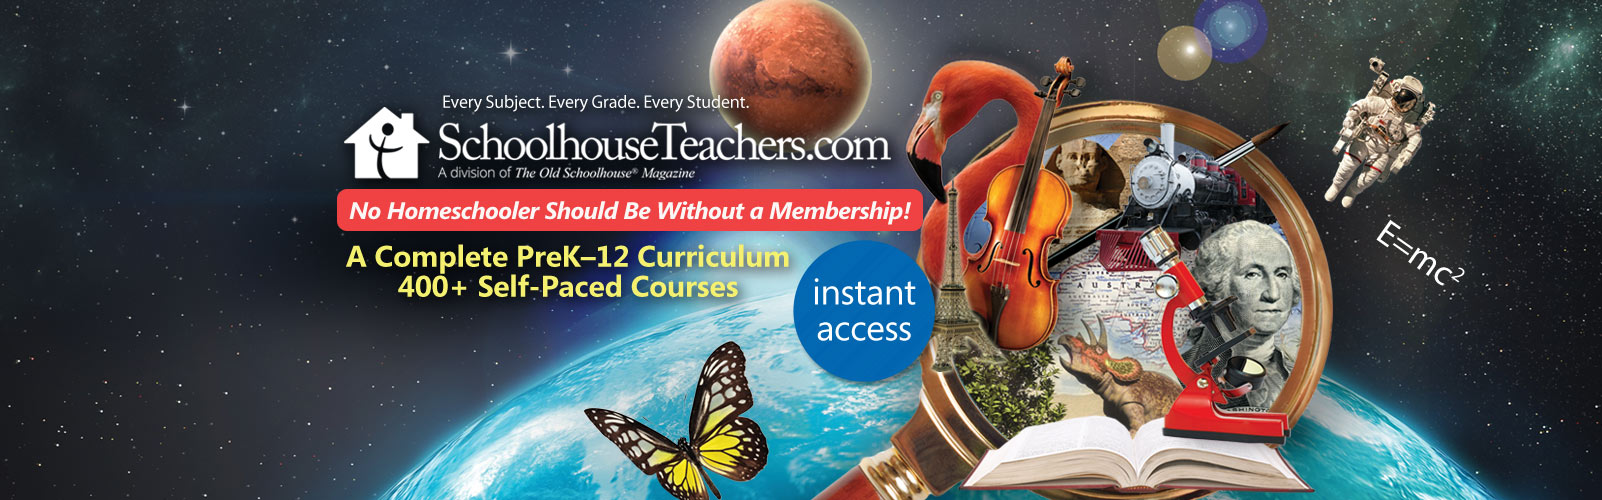 SchoolhouseTeachers.com - Online Homeschool Courses for ...